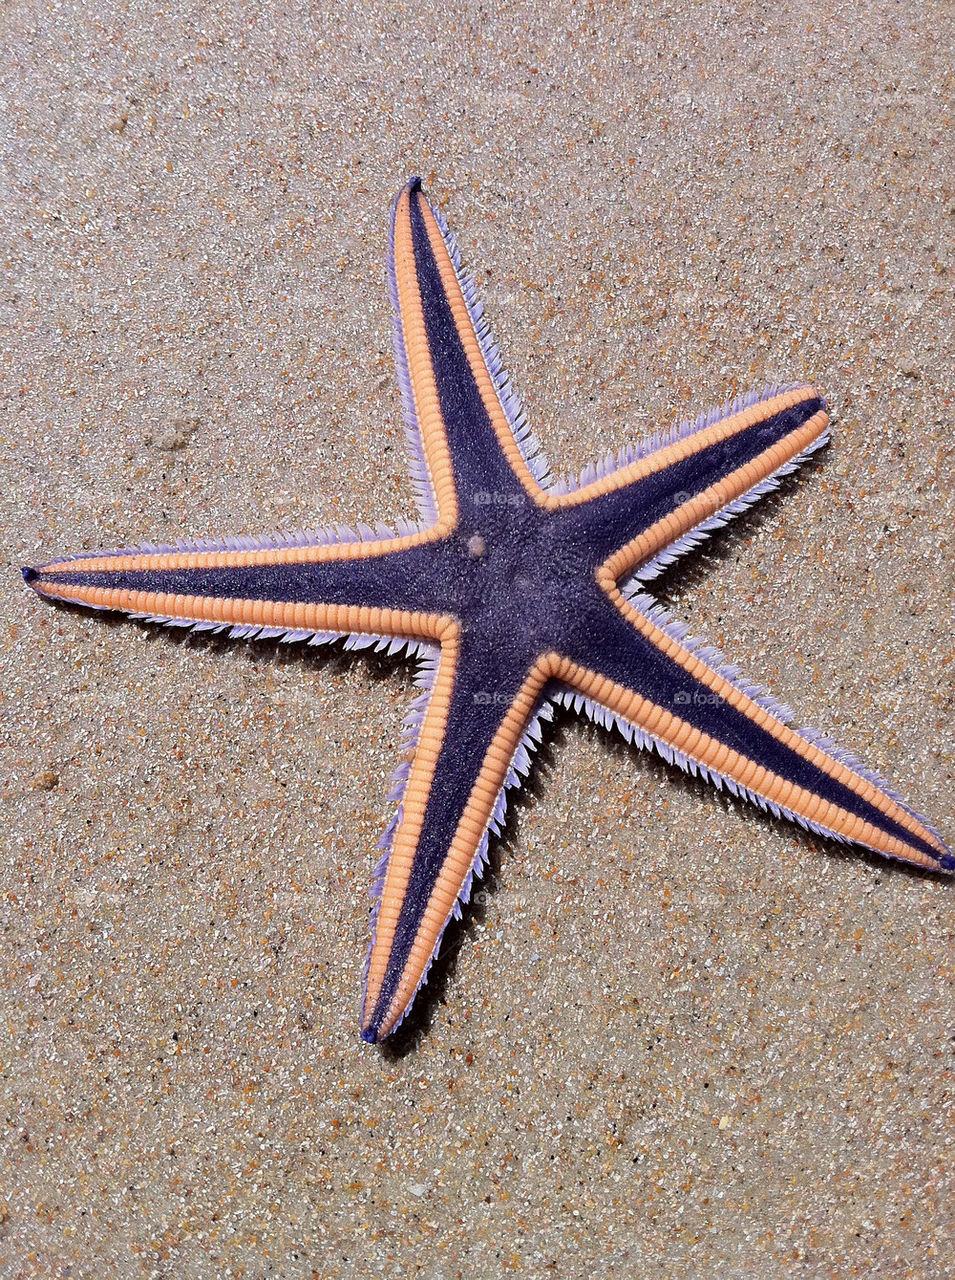 beach starfish fl daytona by dmelhorn